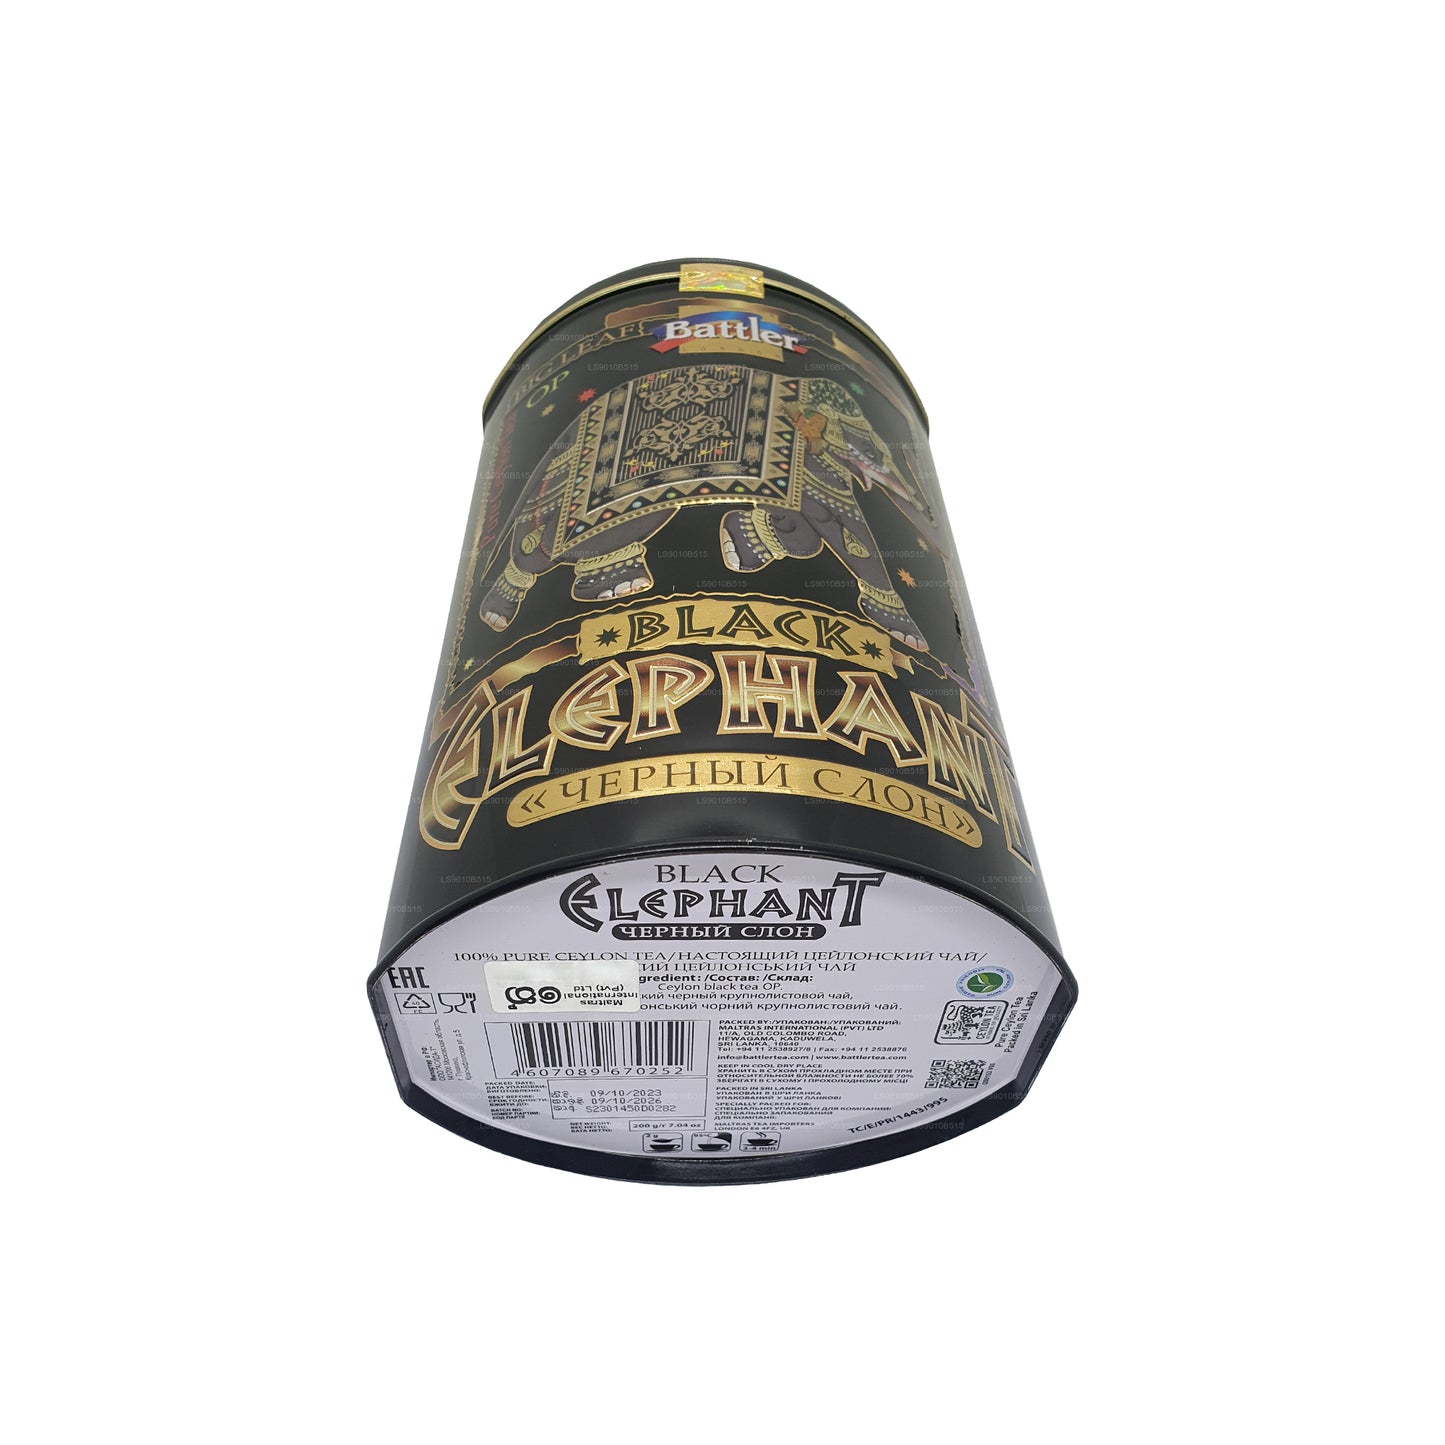 Carrito de lata Battler Black Elephant (200 g)